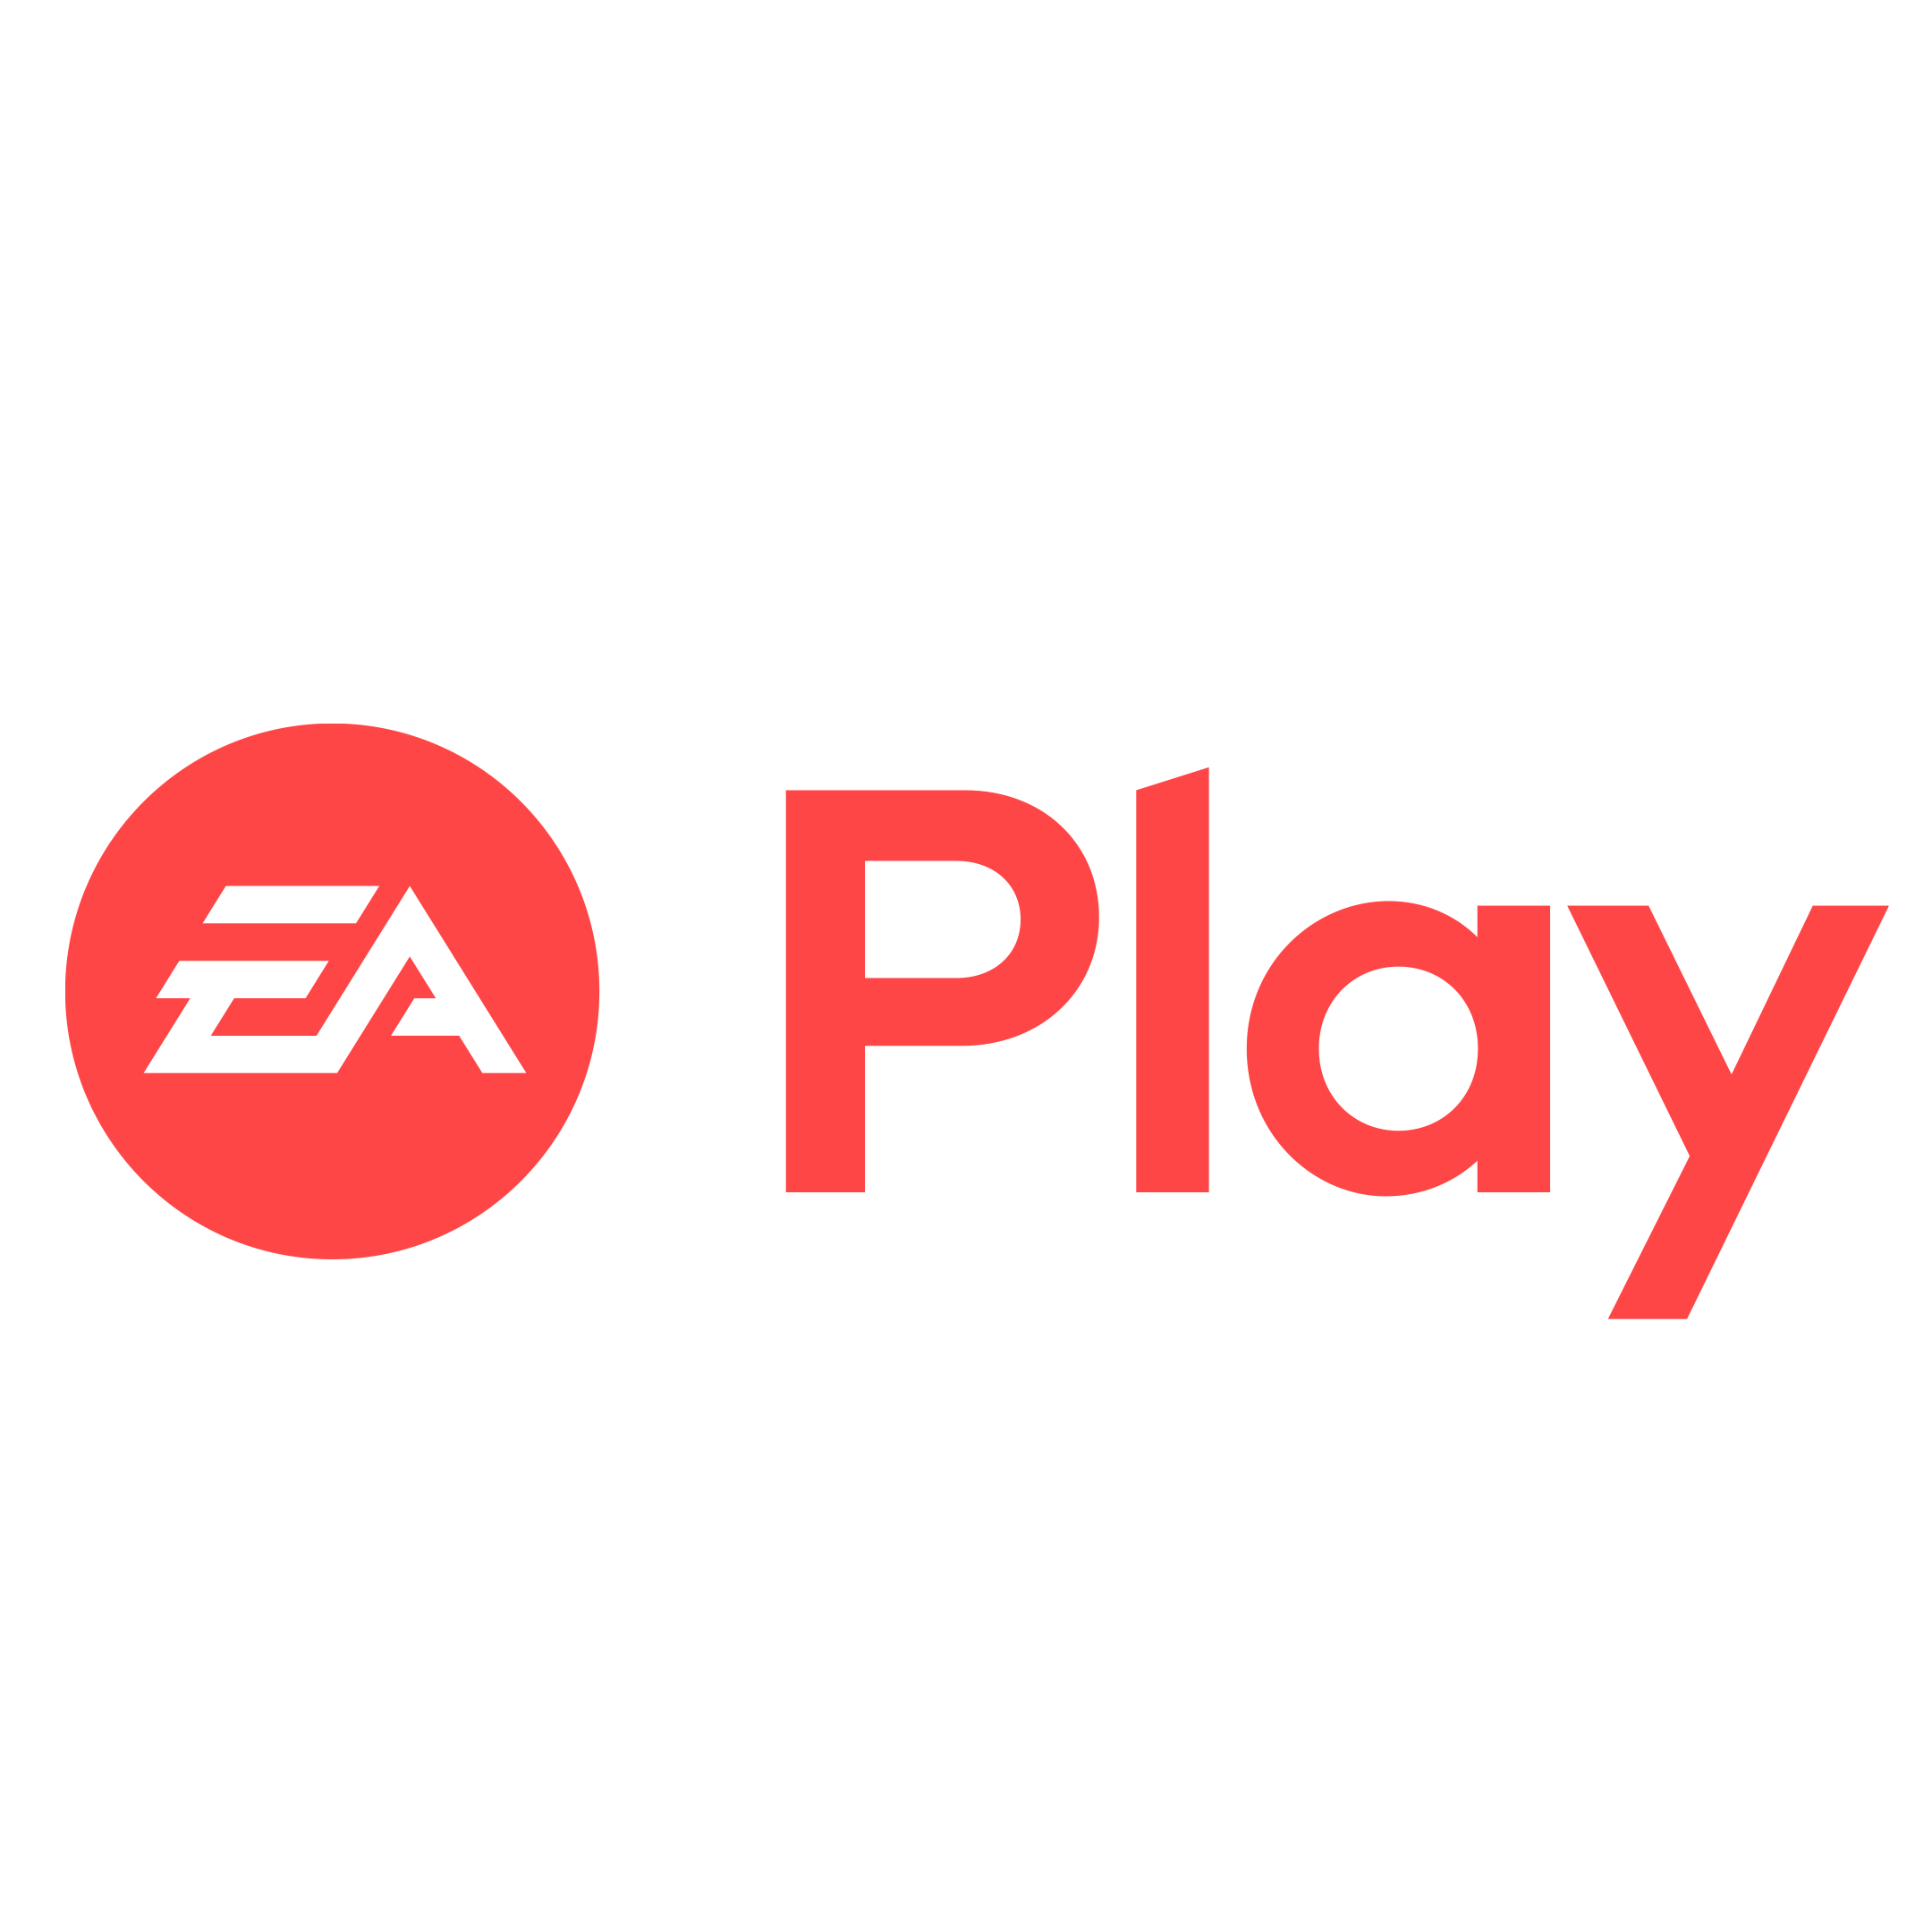 Пополнение ea play. EA Play. EA Play logo. EA Play карточки. Иконка EA Play без фона.